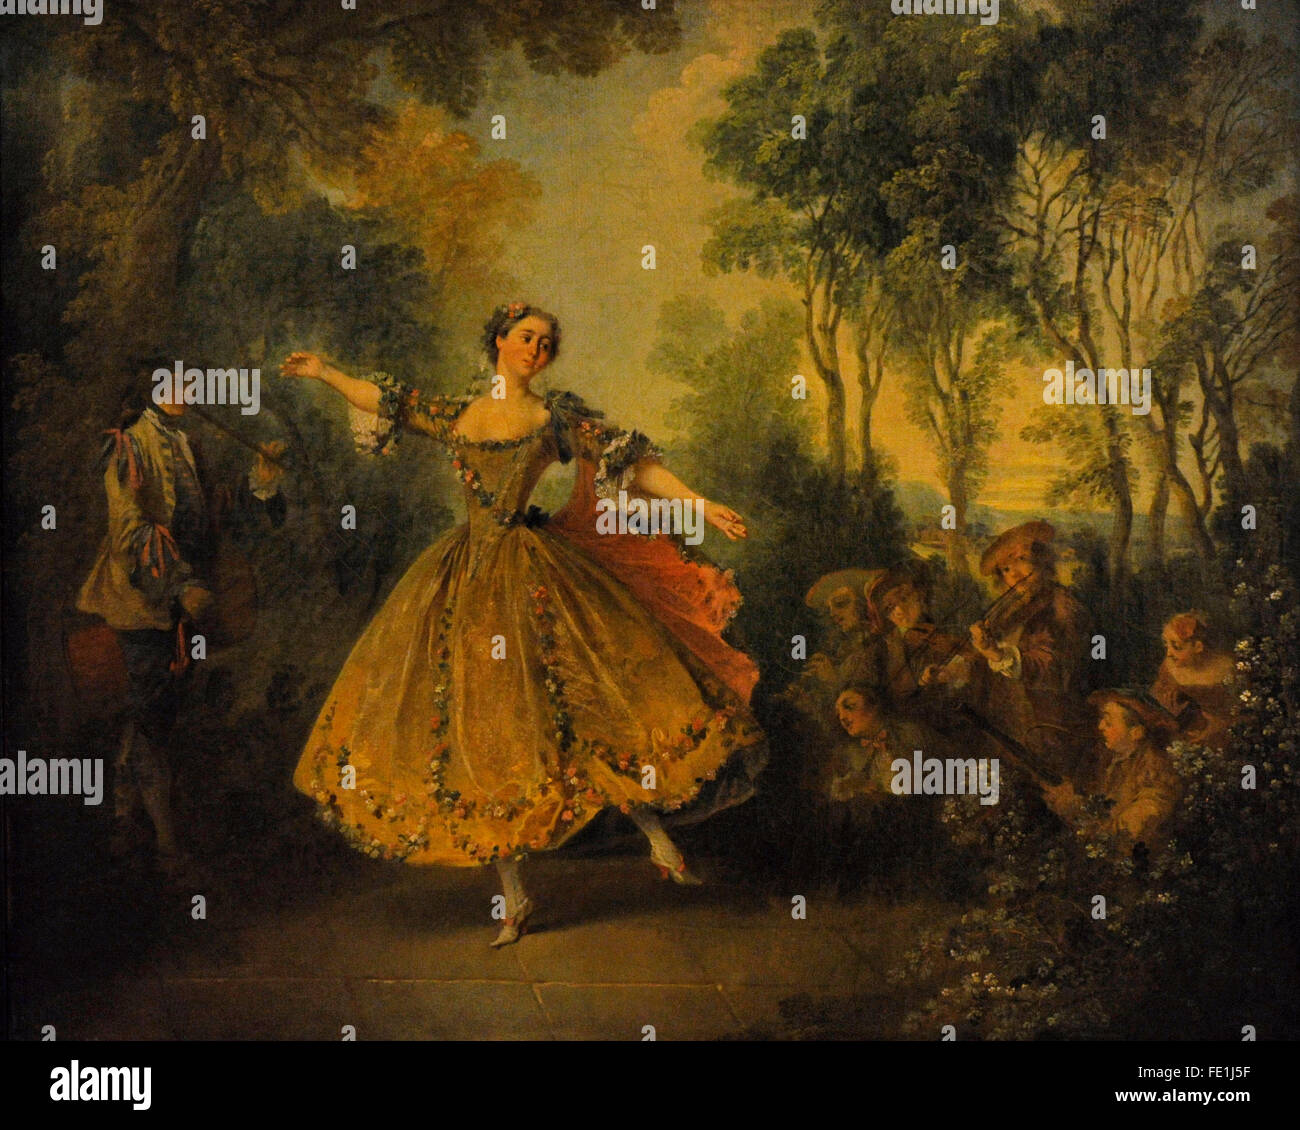 Nicolas Lancret (1690-1743). Le peintre français. La Camargo dansant, première moitié du xviiie siècle. Le Musée de l'Ermitage. Saint Petersburg. La Russie. Banque D'Images